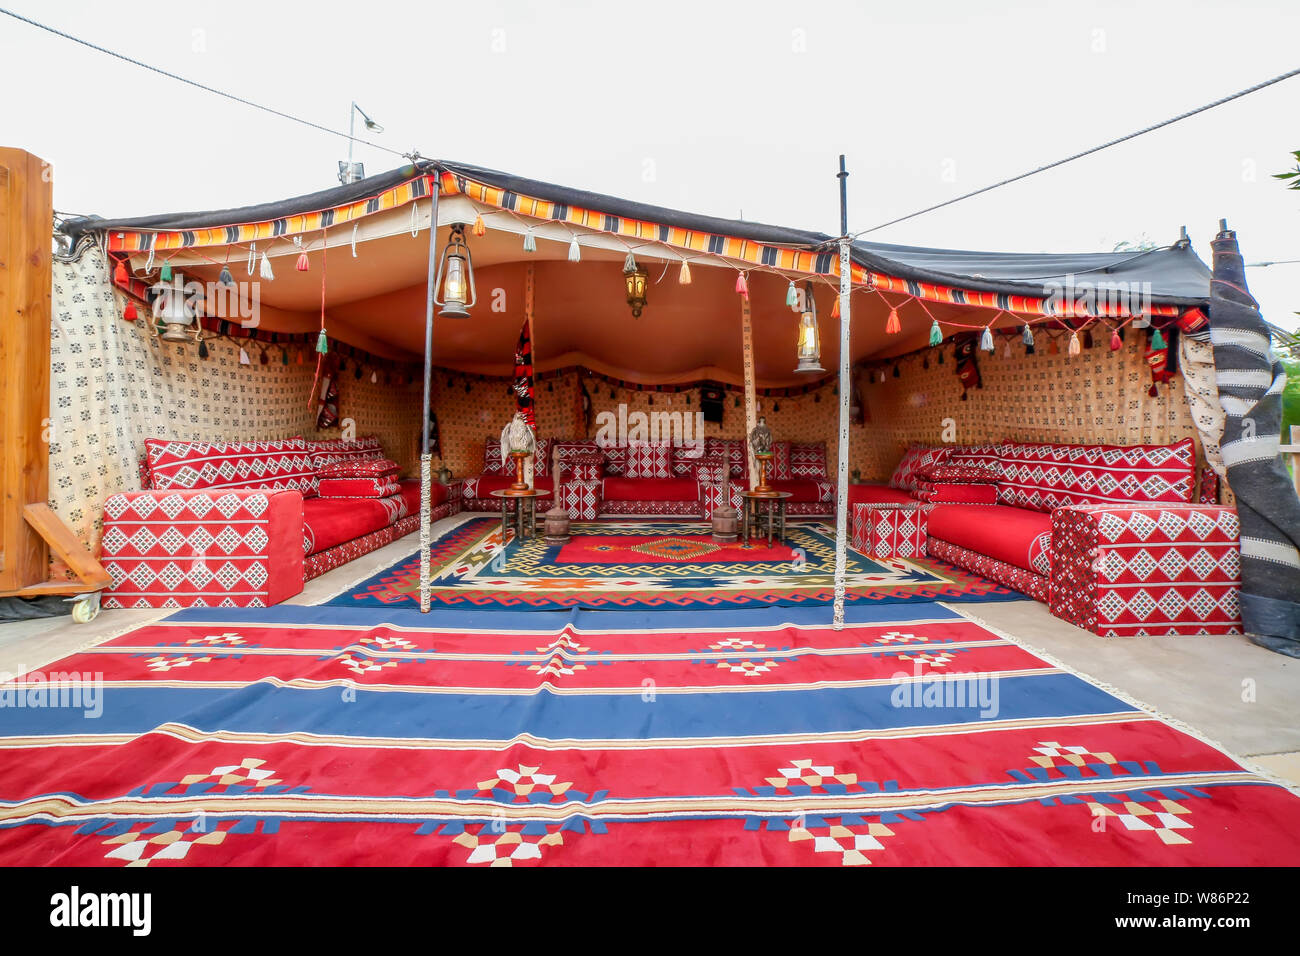 Khaima traditionnel arabe tente de camping de style traditionnel des Etats  arabes Photo Stock - Alamy